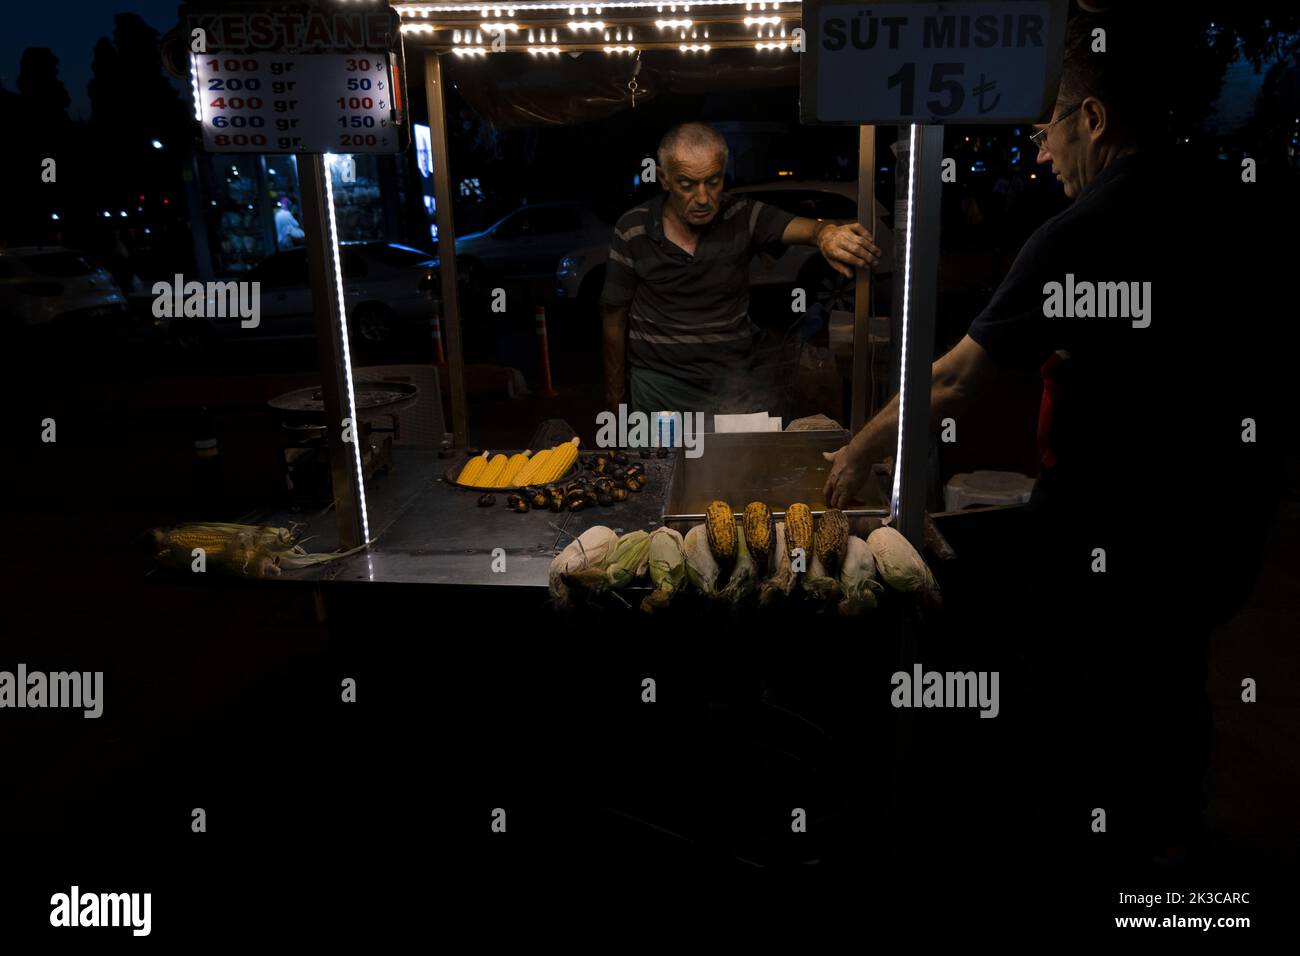 Un pédateur de maïs avec un client, une vidéo de nuit à Istanbul, un vendeur de maïs léger, explorer Istanbul, une idée de vie nocturne Banque D'Images